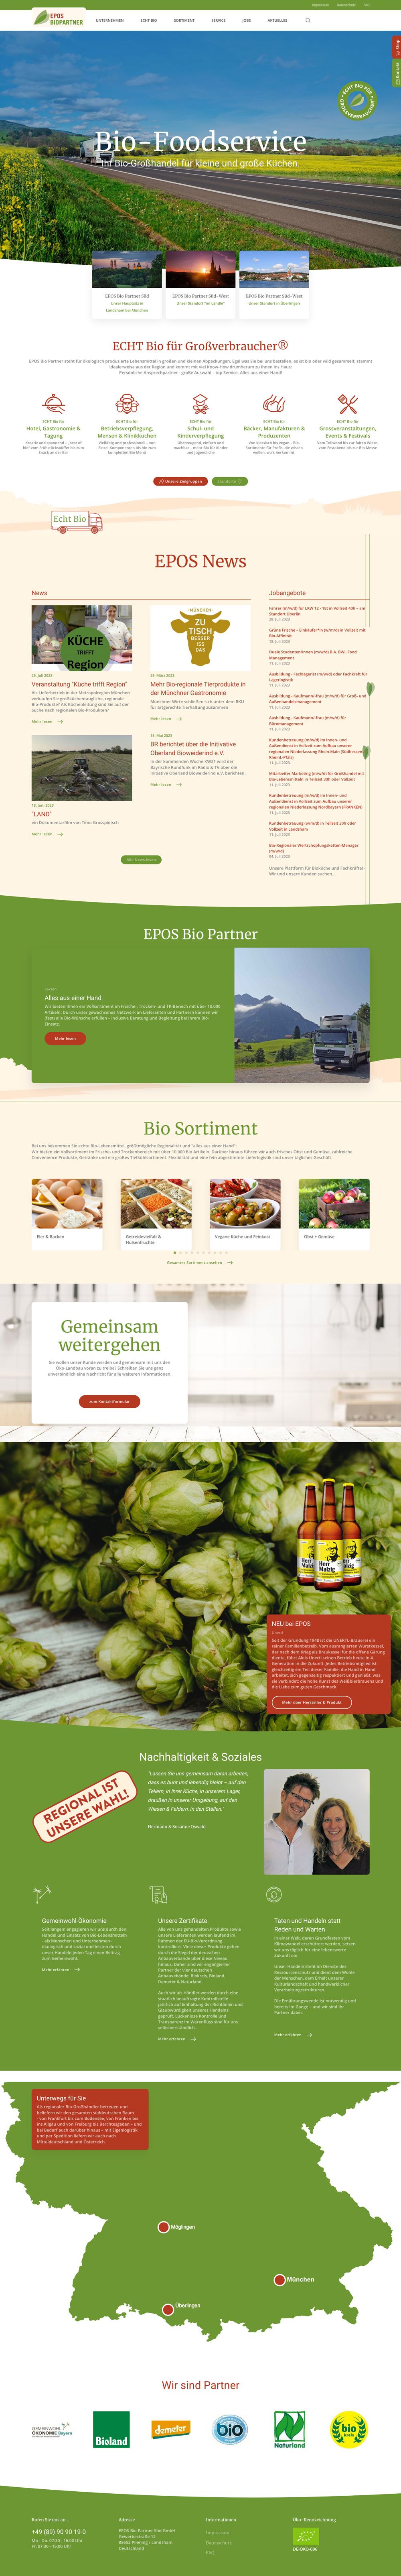 Epos Biopartner - Neue Startseite des Bio Grosshandels